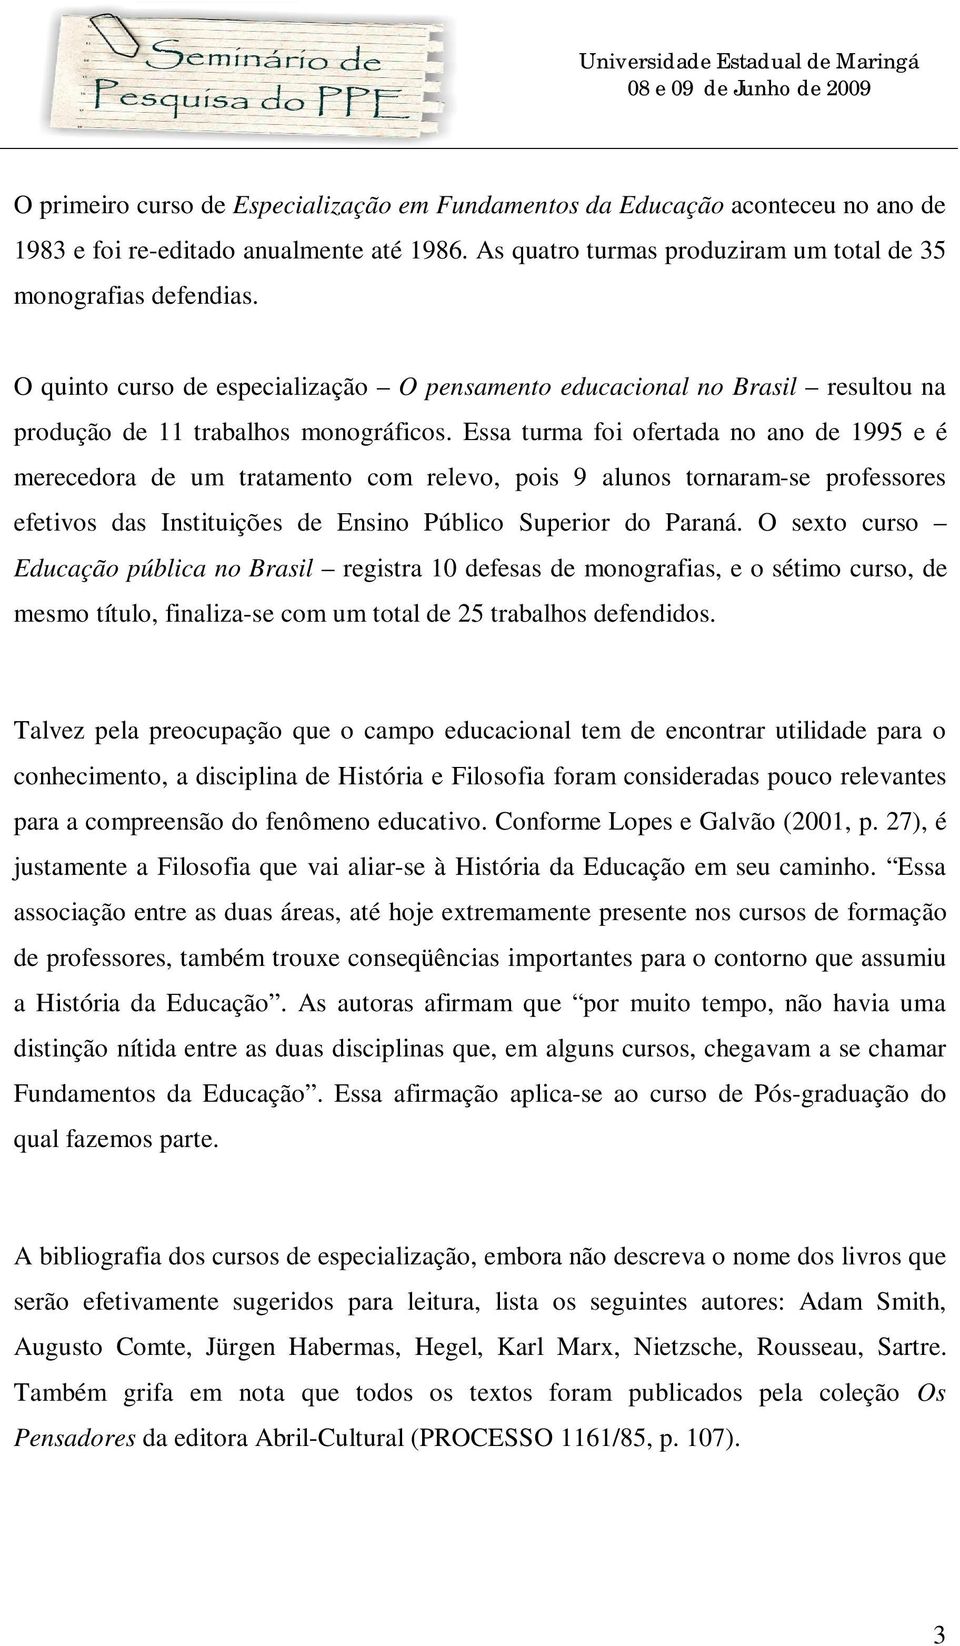 Essa turma foi ofertada no ano de 1995 e é merecedora de um tratamento com relevo, pois 9 alunos tornaram-se professores efetivos das Instituições de Ensino Público Superior do Paraná.